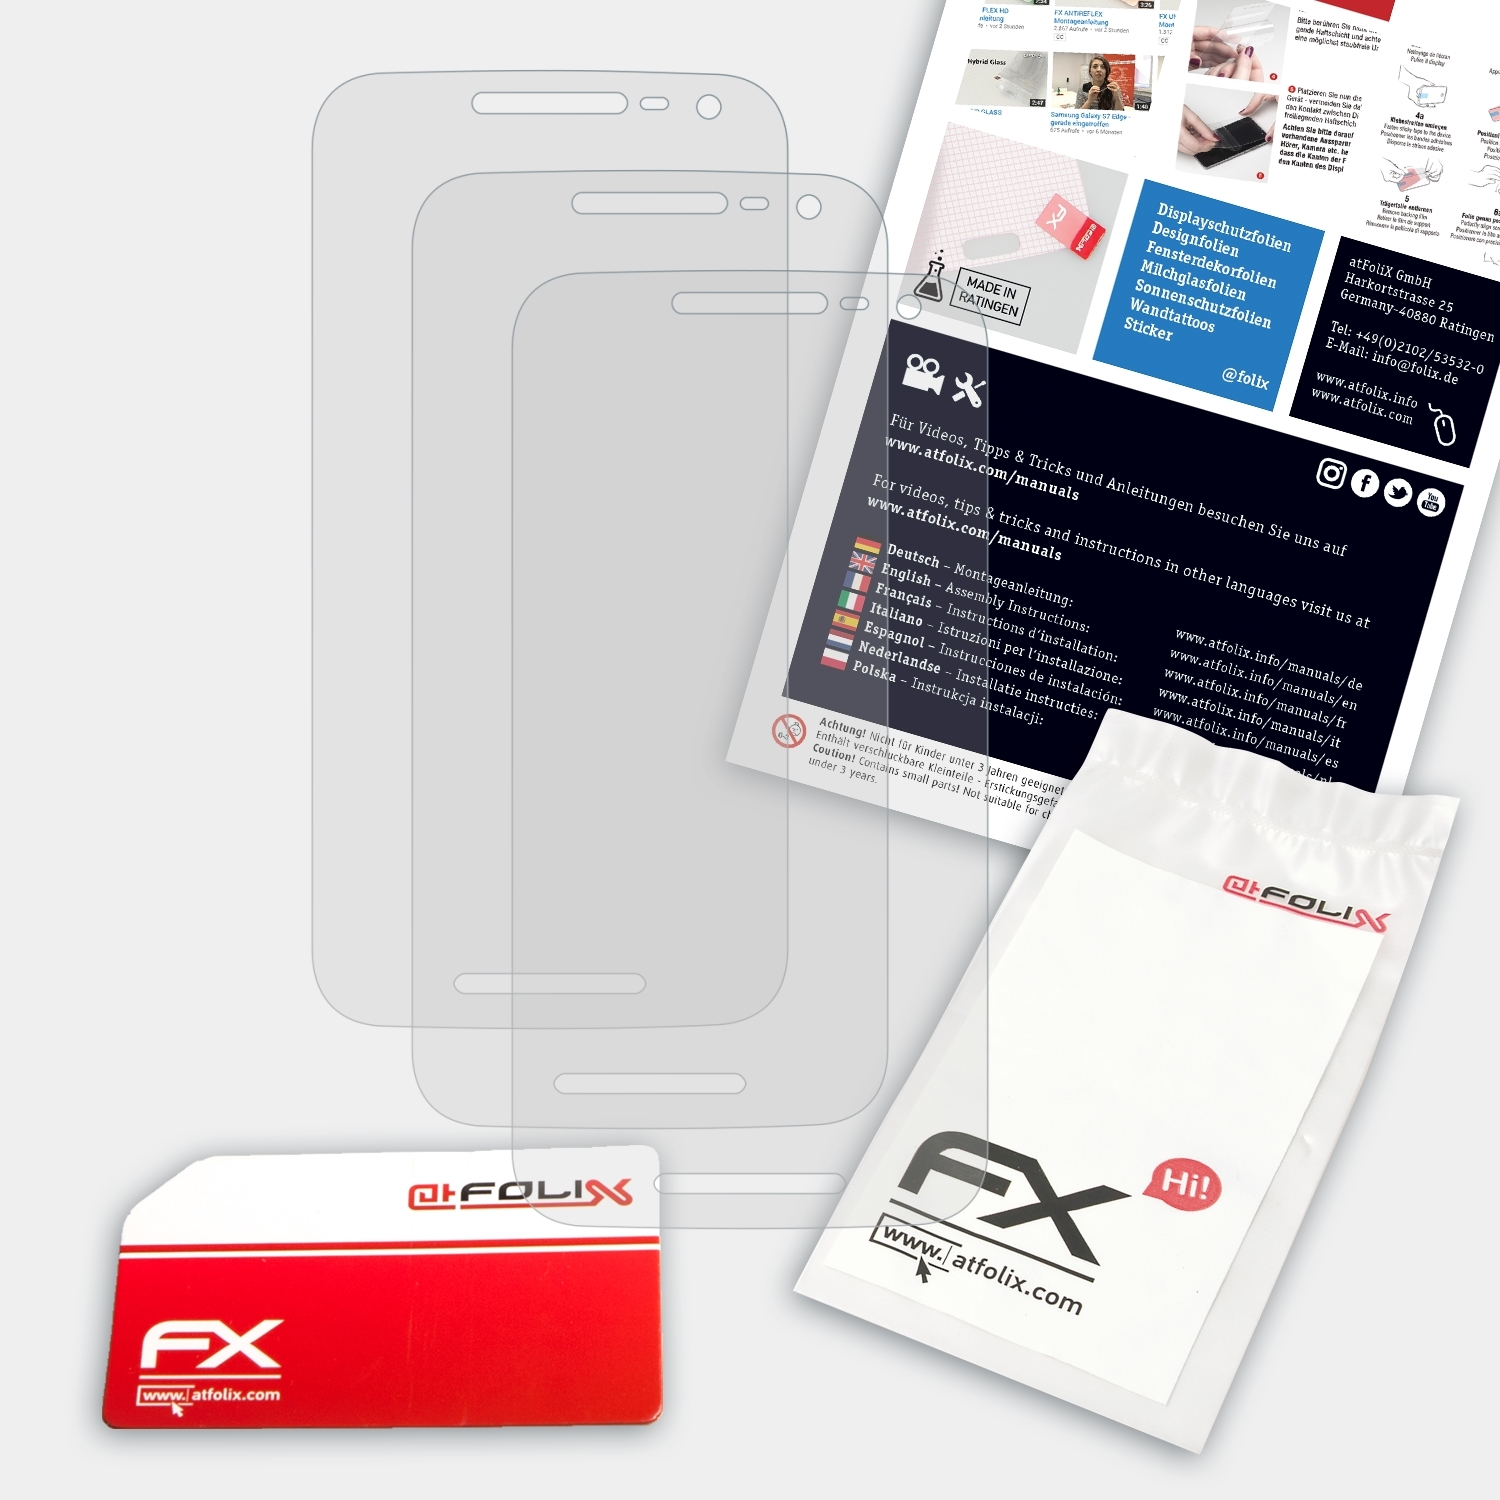 G 3x (3. FX-Antireflex Moto 2015)) Displayschutz(für Generation ATFOLIX Motorola